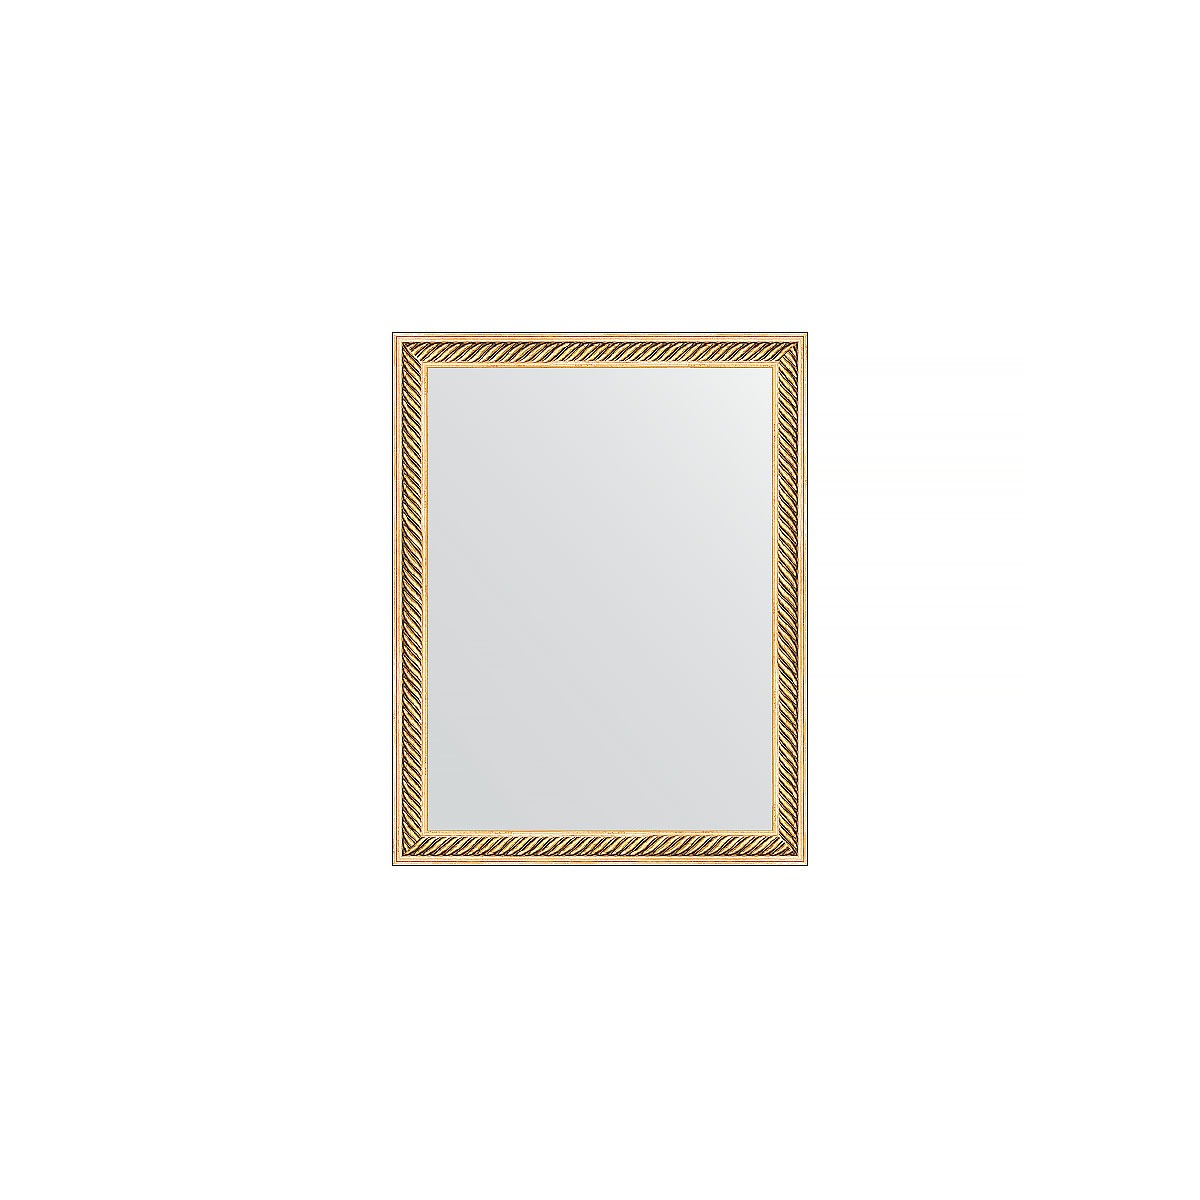 Зеркало в багетной раме Evoform витое золото 28 мм 35х45 см